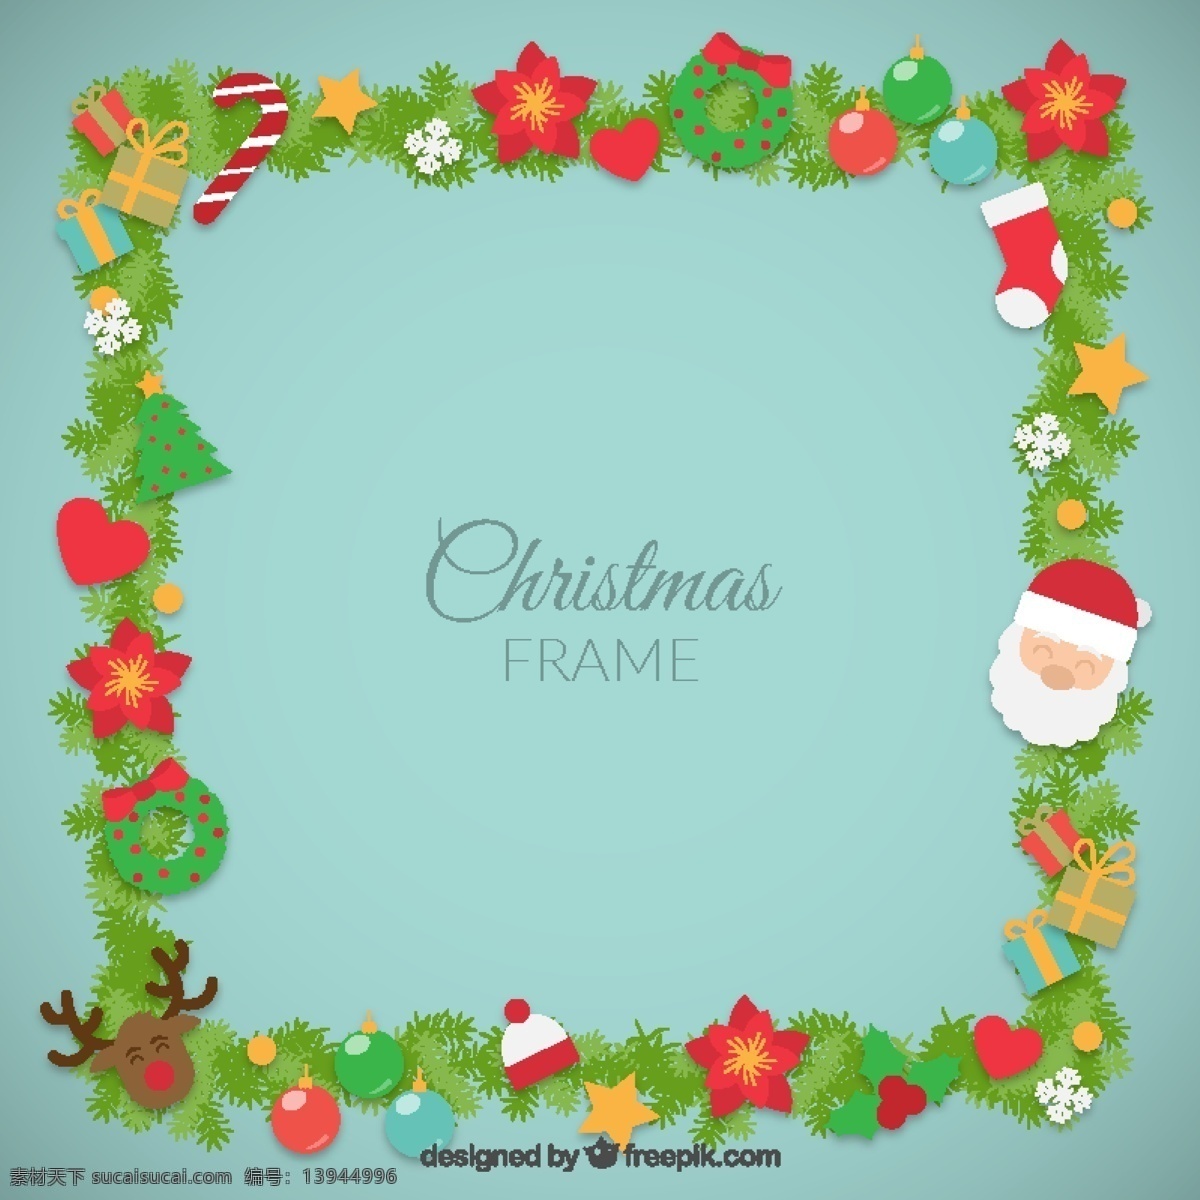 圣诞节 元素 框架 架 心 圣诞快乐 冬天快乐 克劳斯 圣诞老人 圣诞 庆祝 花圈 鹿 父亲的节日 画框 节日快乐 圣诞节图片 青色 天蓝色